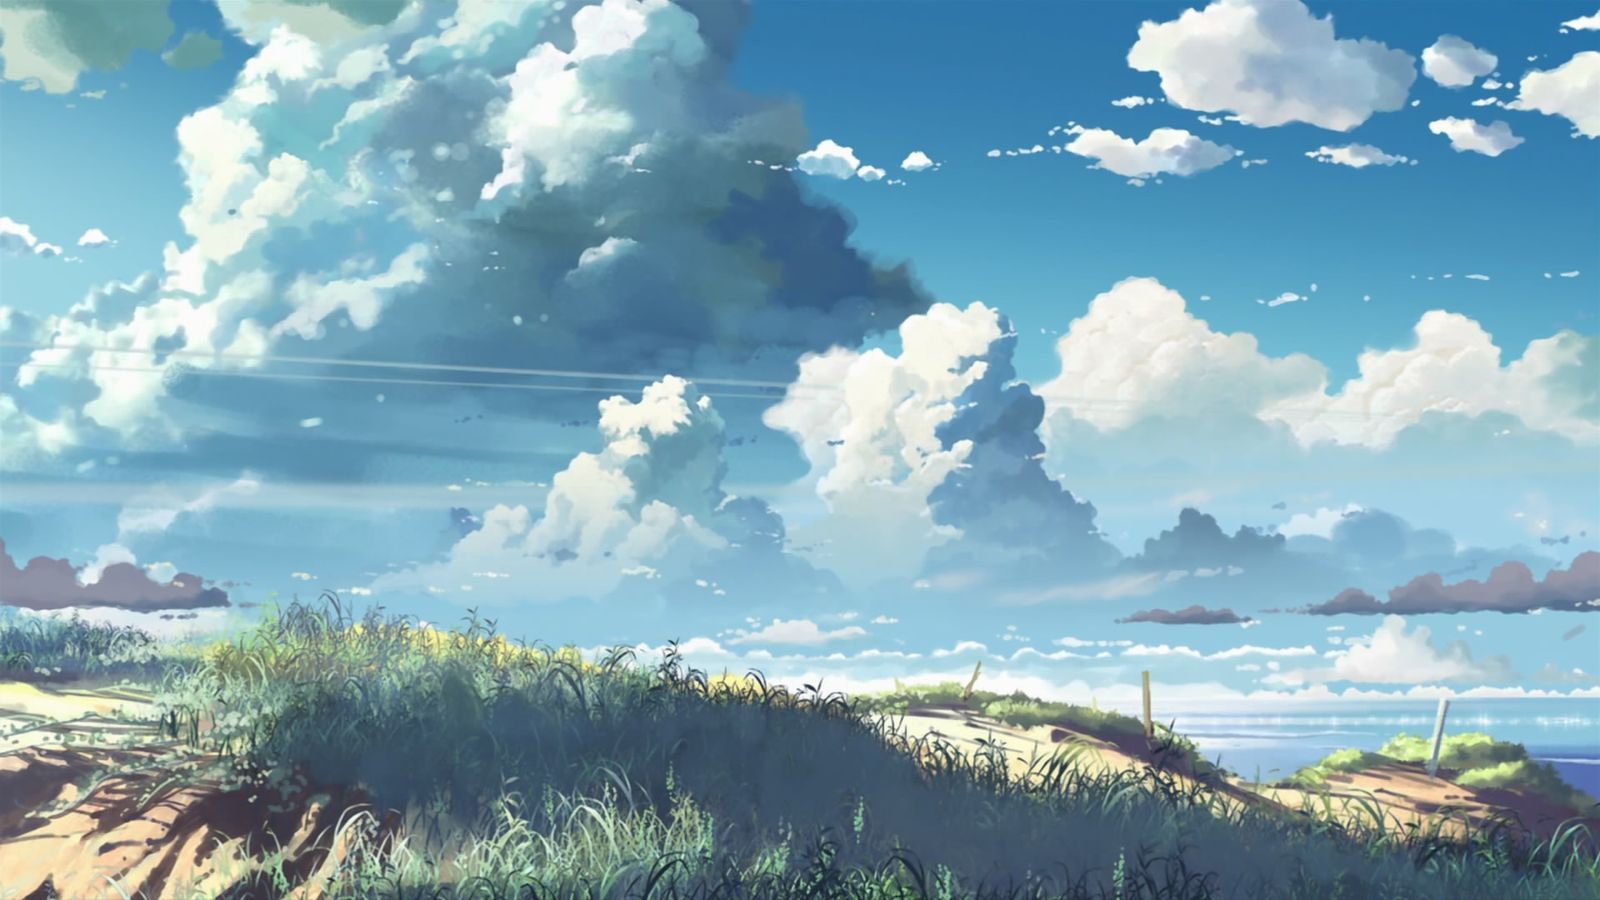 цветы из воды | Anime scenery wallpaper, Anime backgrounds wallpapers, Anime  scenery